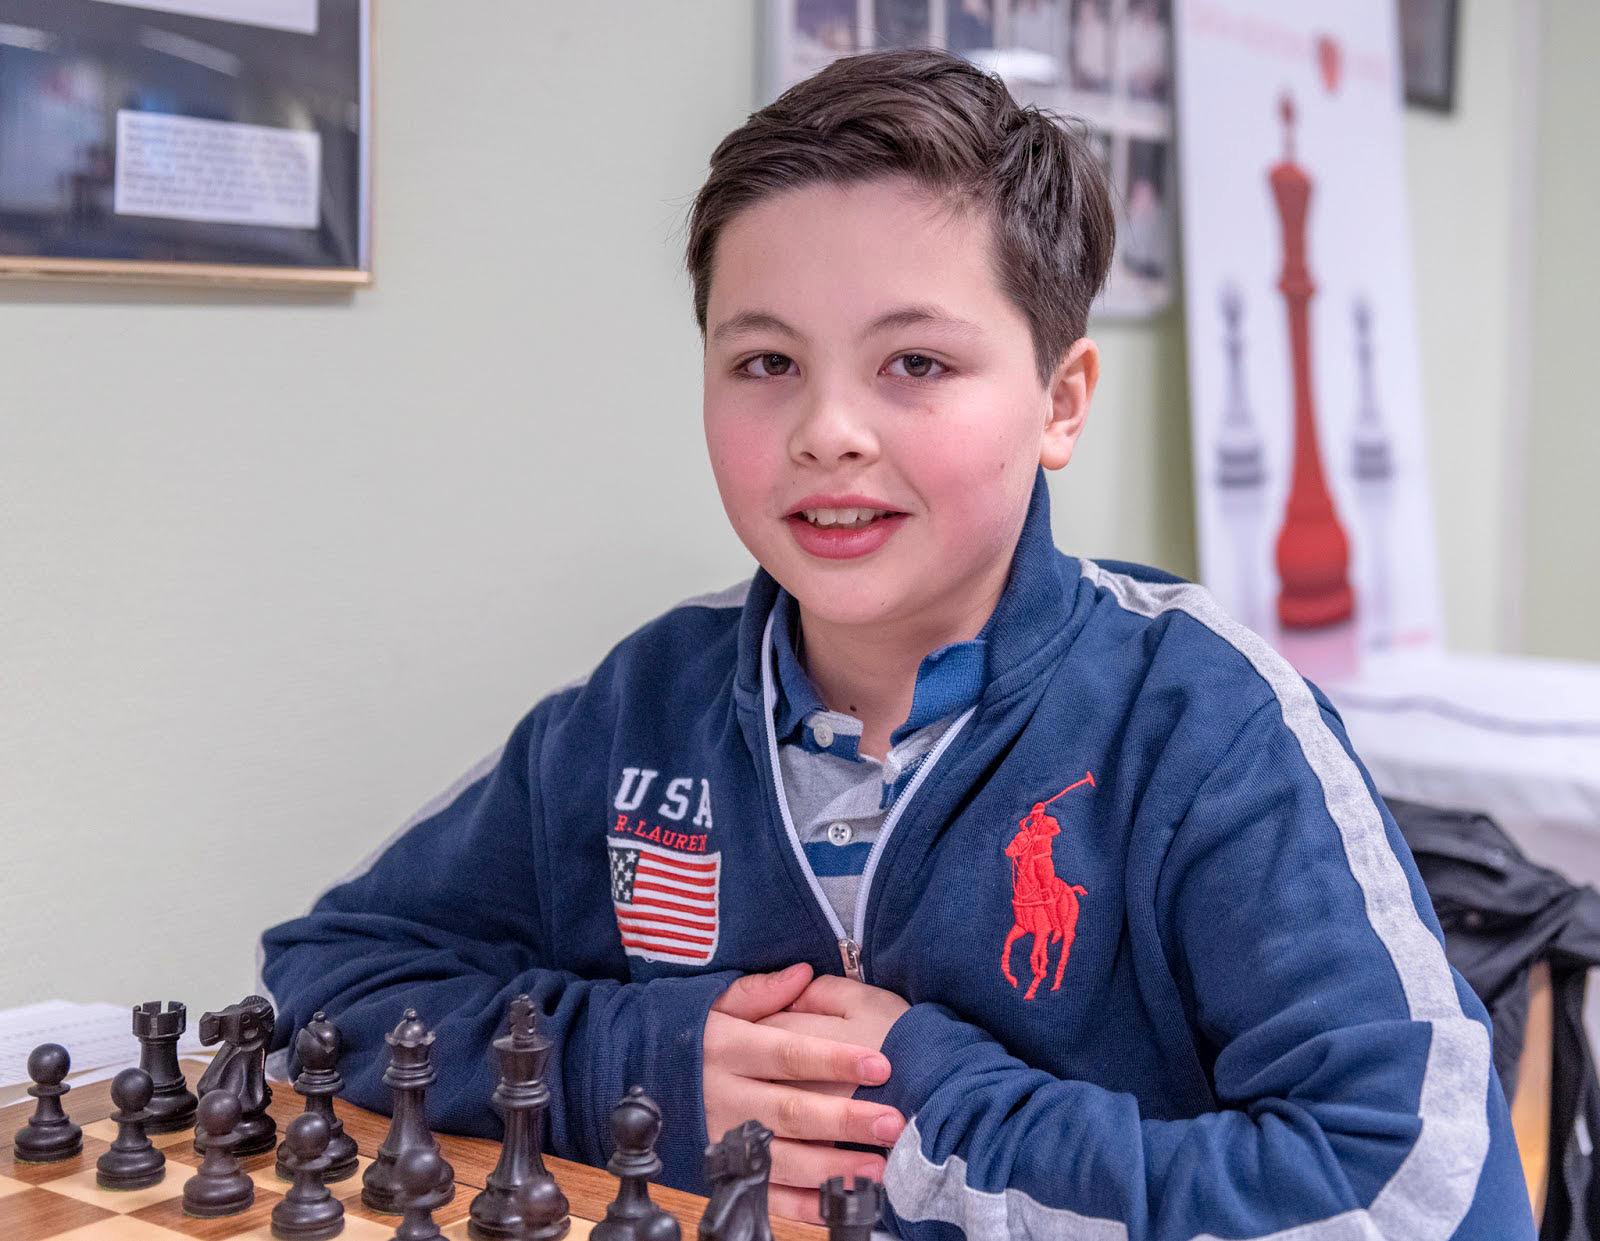 Edvin Trost, 14 år, överraskade och vann schack-SM i det supersnabba spelet bulletschack. För att bli bra tränar han mycket på hemsidor för bulletschack.